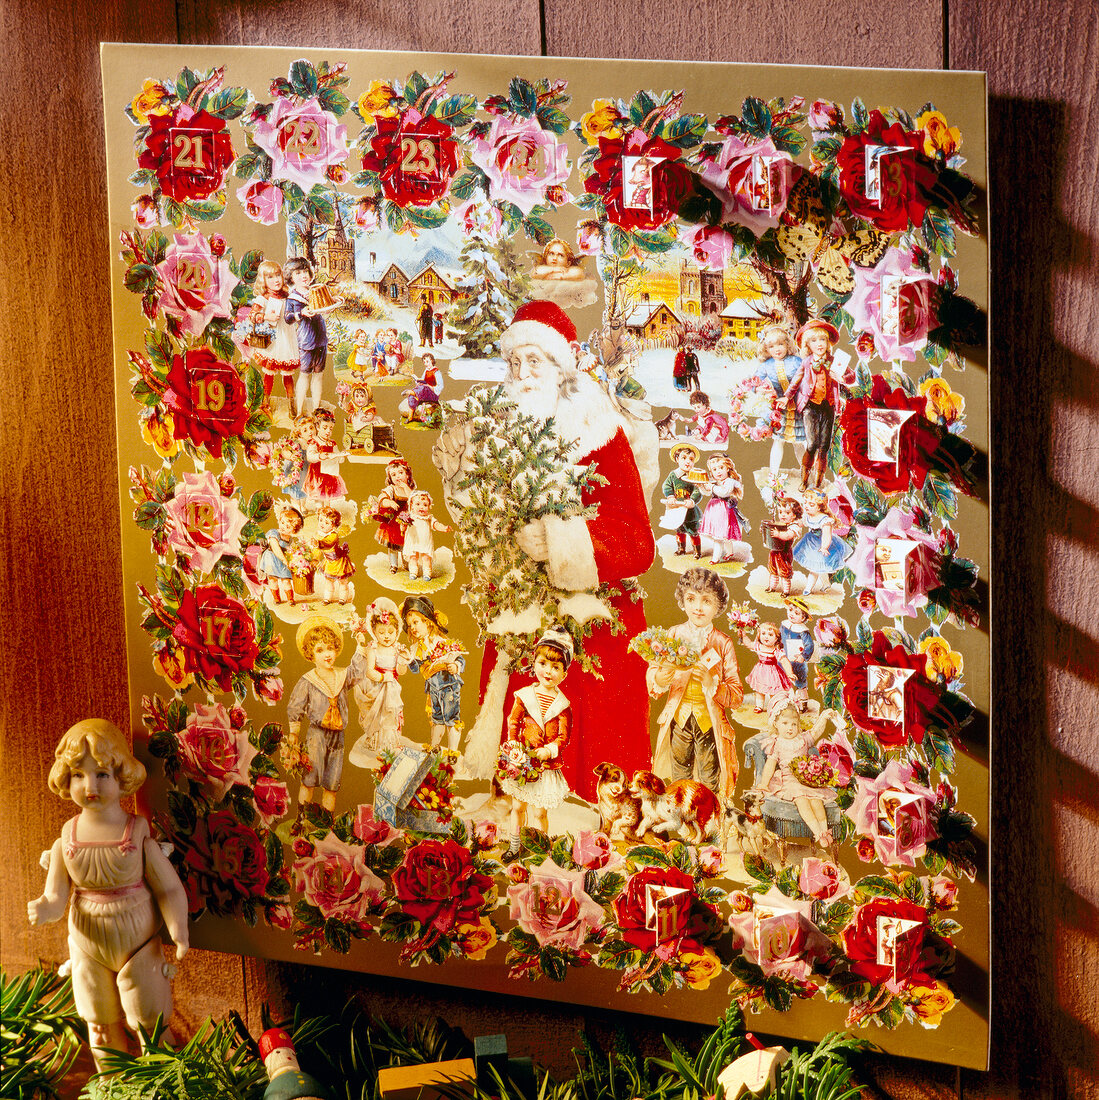 Nostalgic printed advent calendar made of cardboard